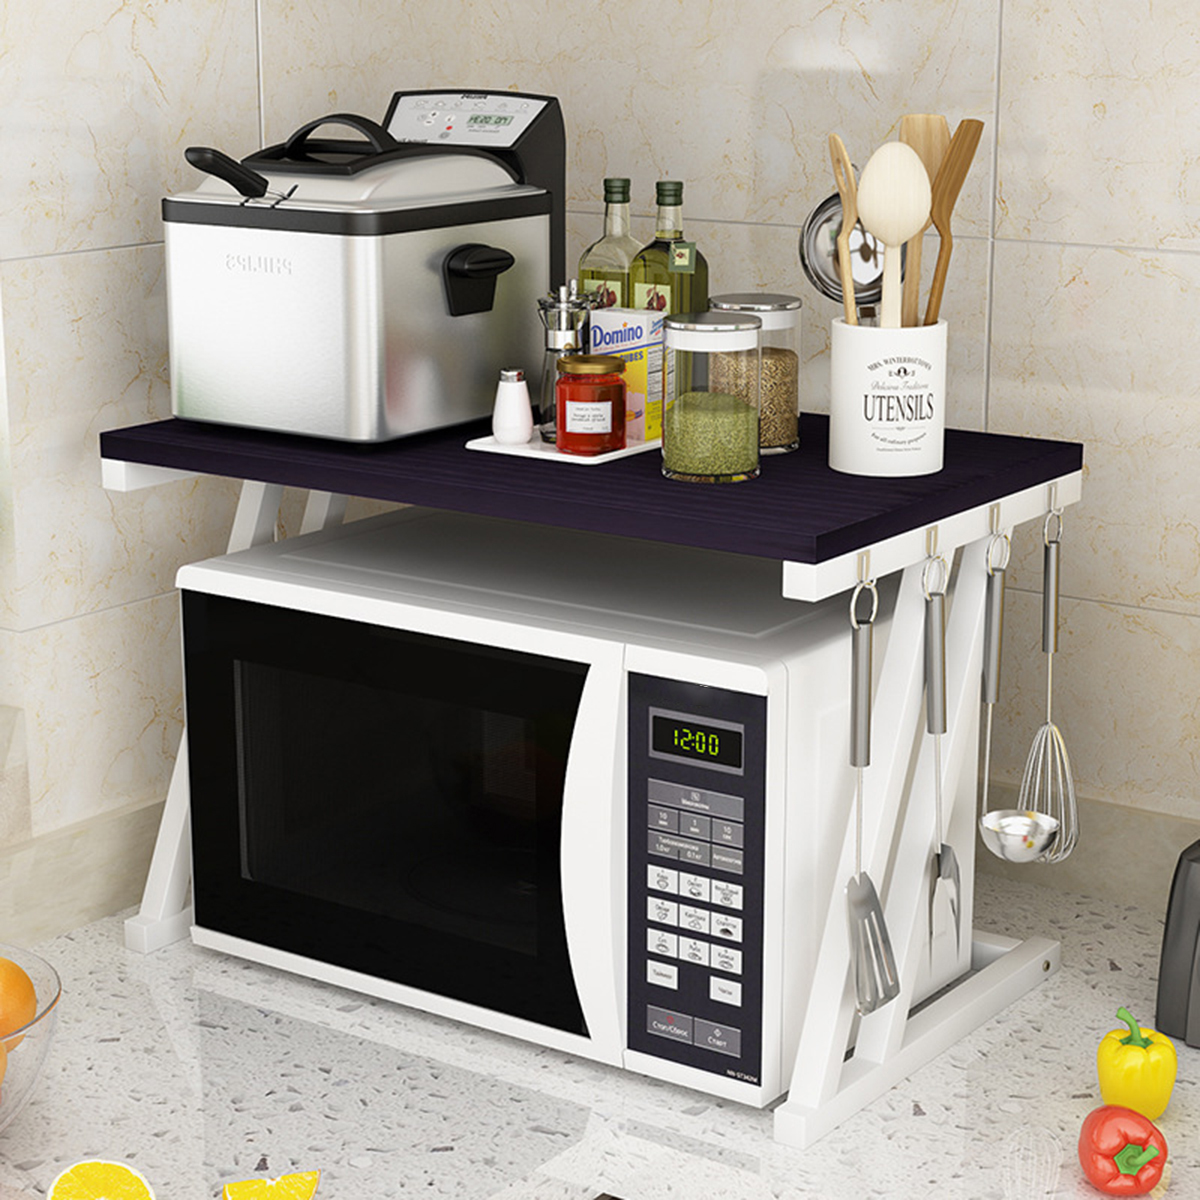 2-Tier-Kitchen-Baker-Rack-Microwave-Oven-Stand-Storage-Cart-Workstation-Shelf-Desktop-Organizer-1633559-4